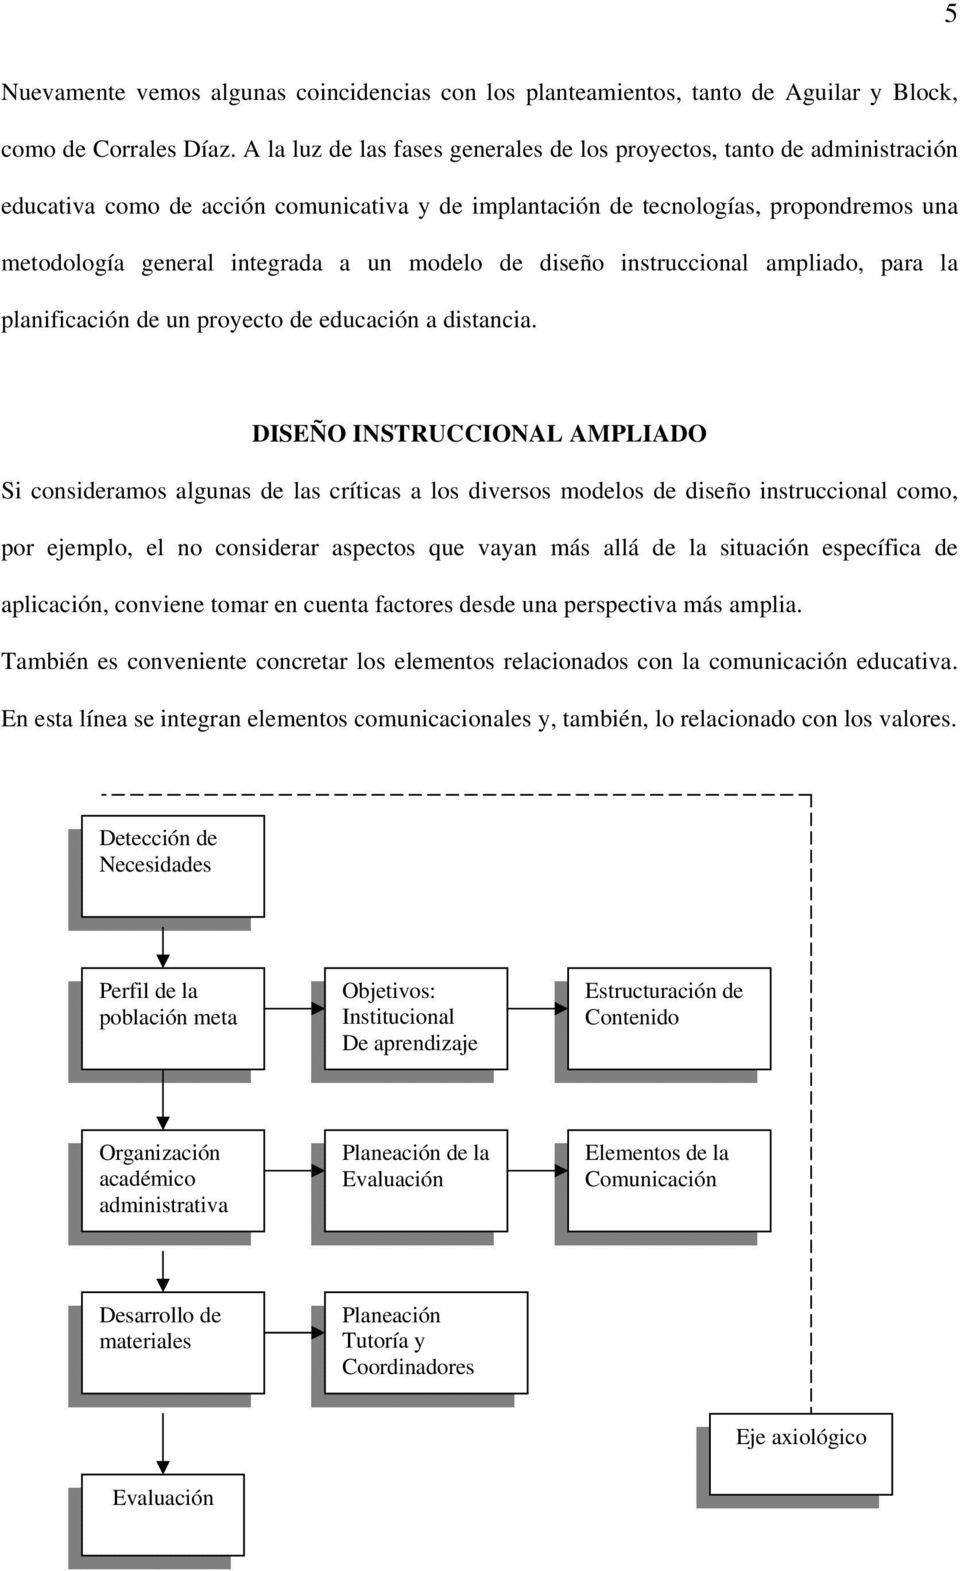 DISEÑO INSTRUCCIONAL Y DESARROLLO DE PROYECTOS DE EDUCACIÓN A DISTANCIA -  PDF Free Download